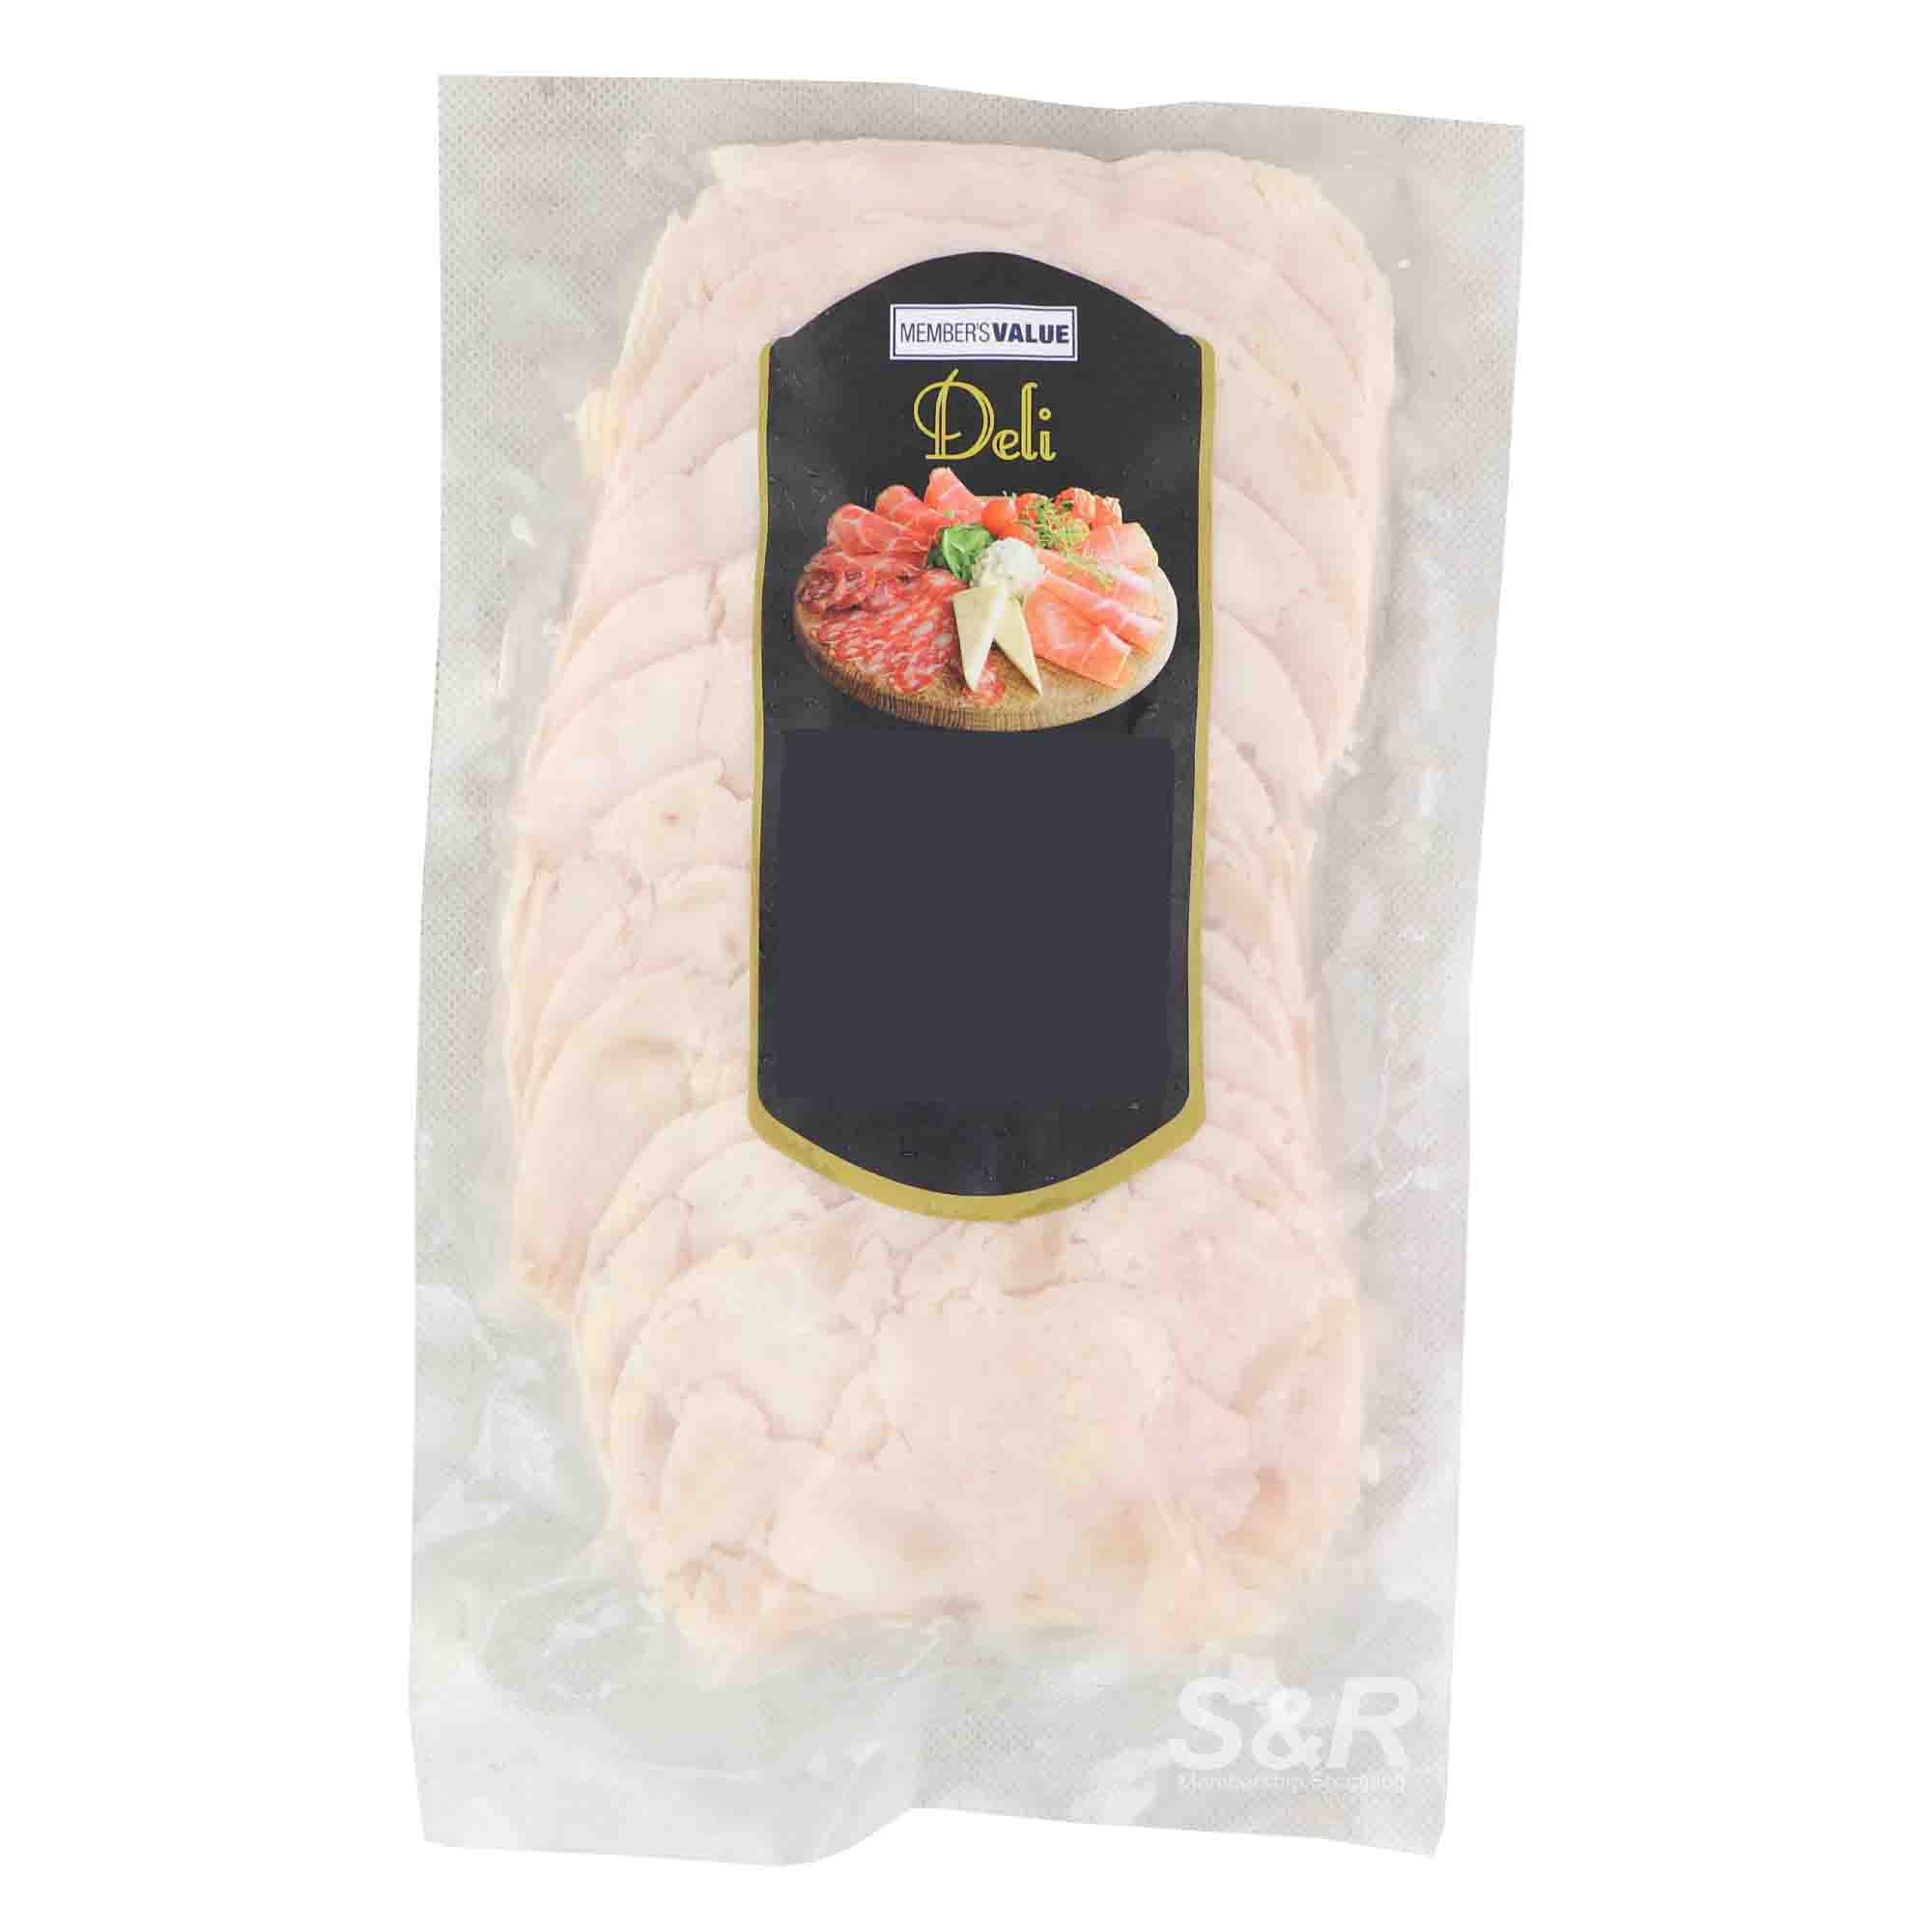 Member's Value Deli Sliced Chicken Ham approx. 1kg